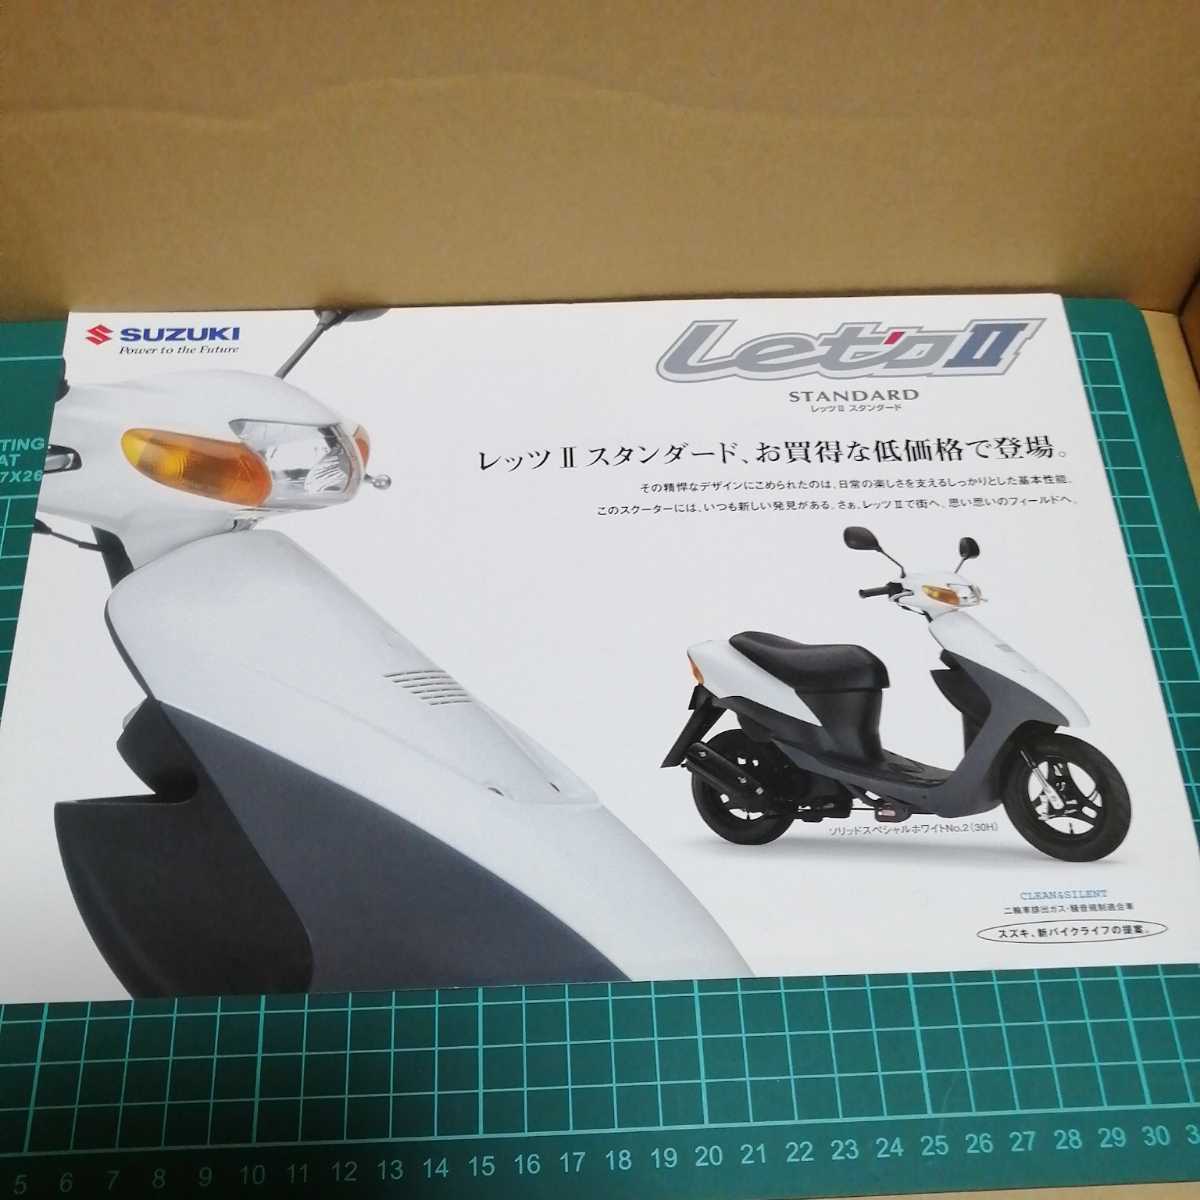 送料無料 スズキ レッツ2 カタログリーフレット 02年2月 Suzuki 原付 バイク オートバイ 当時物 Product Details Yahoo Auctions Japan Proxy Bidding And Shopping Service From Japan